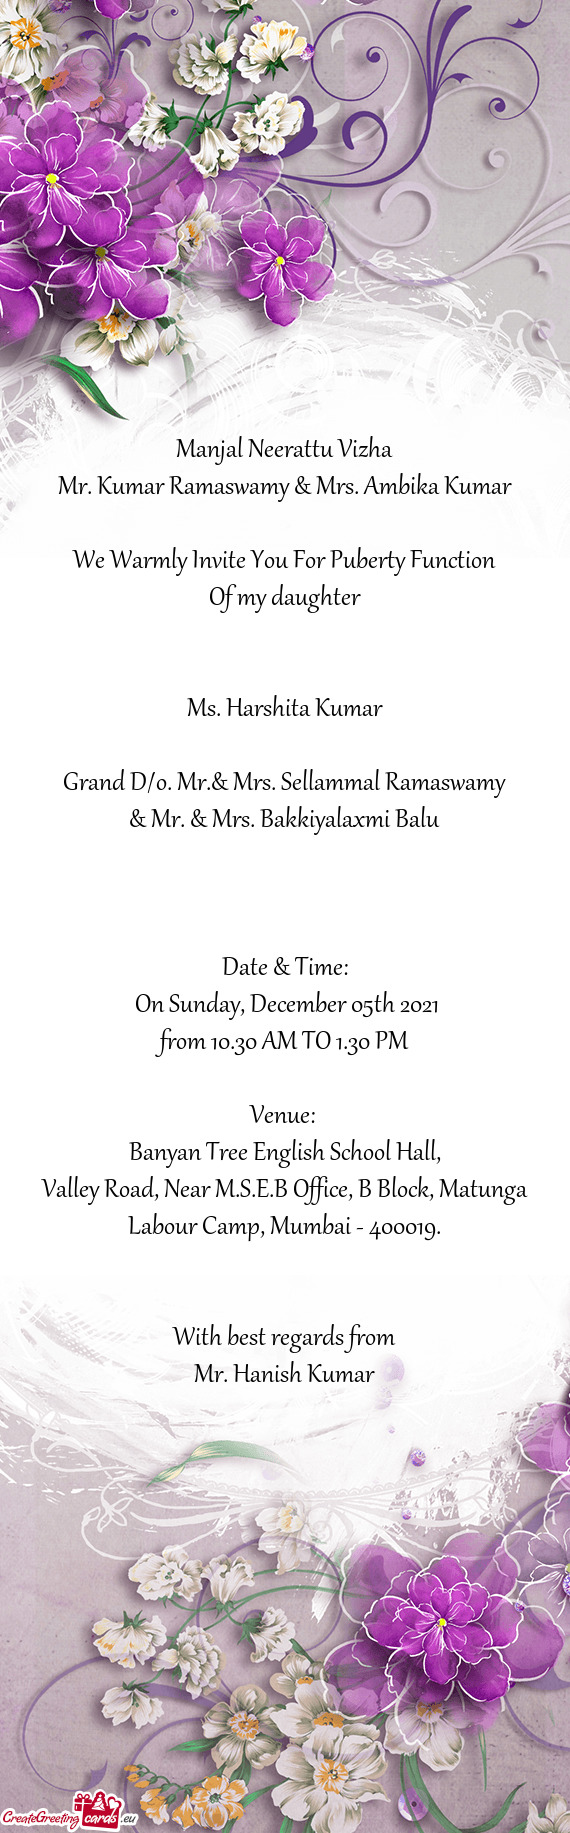 Mr. Kumar Ramaswamy & Mrs. Ambika Kumar